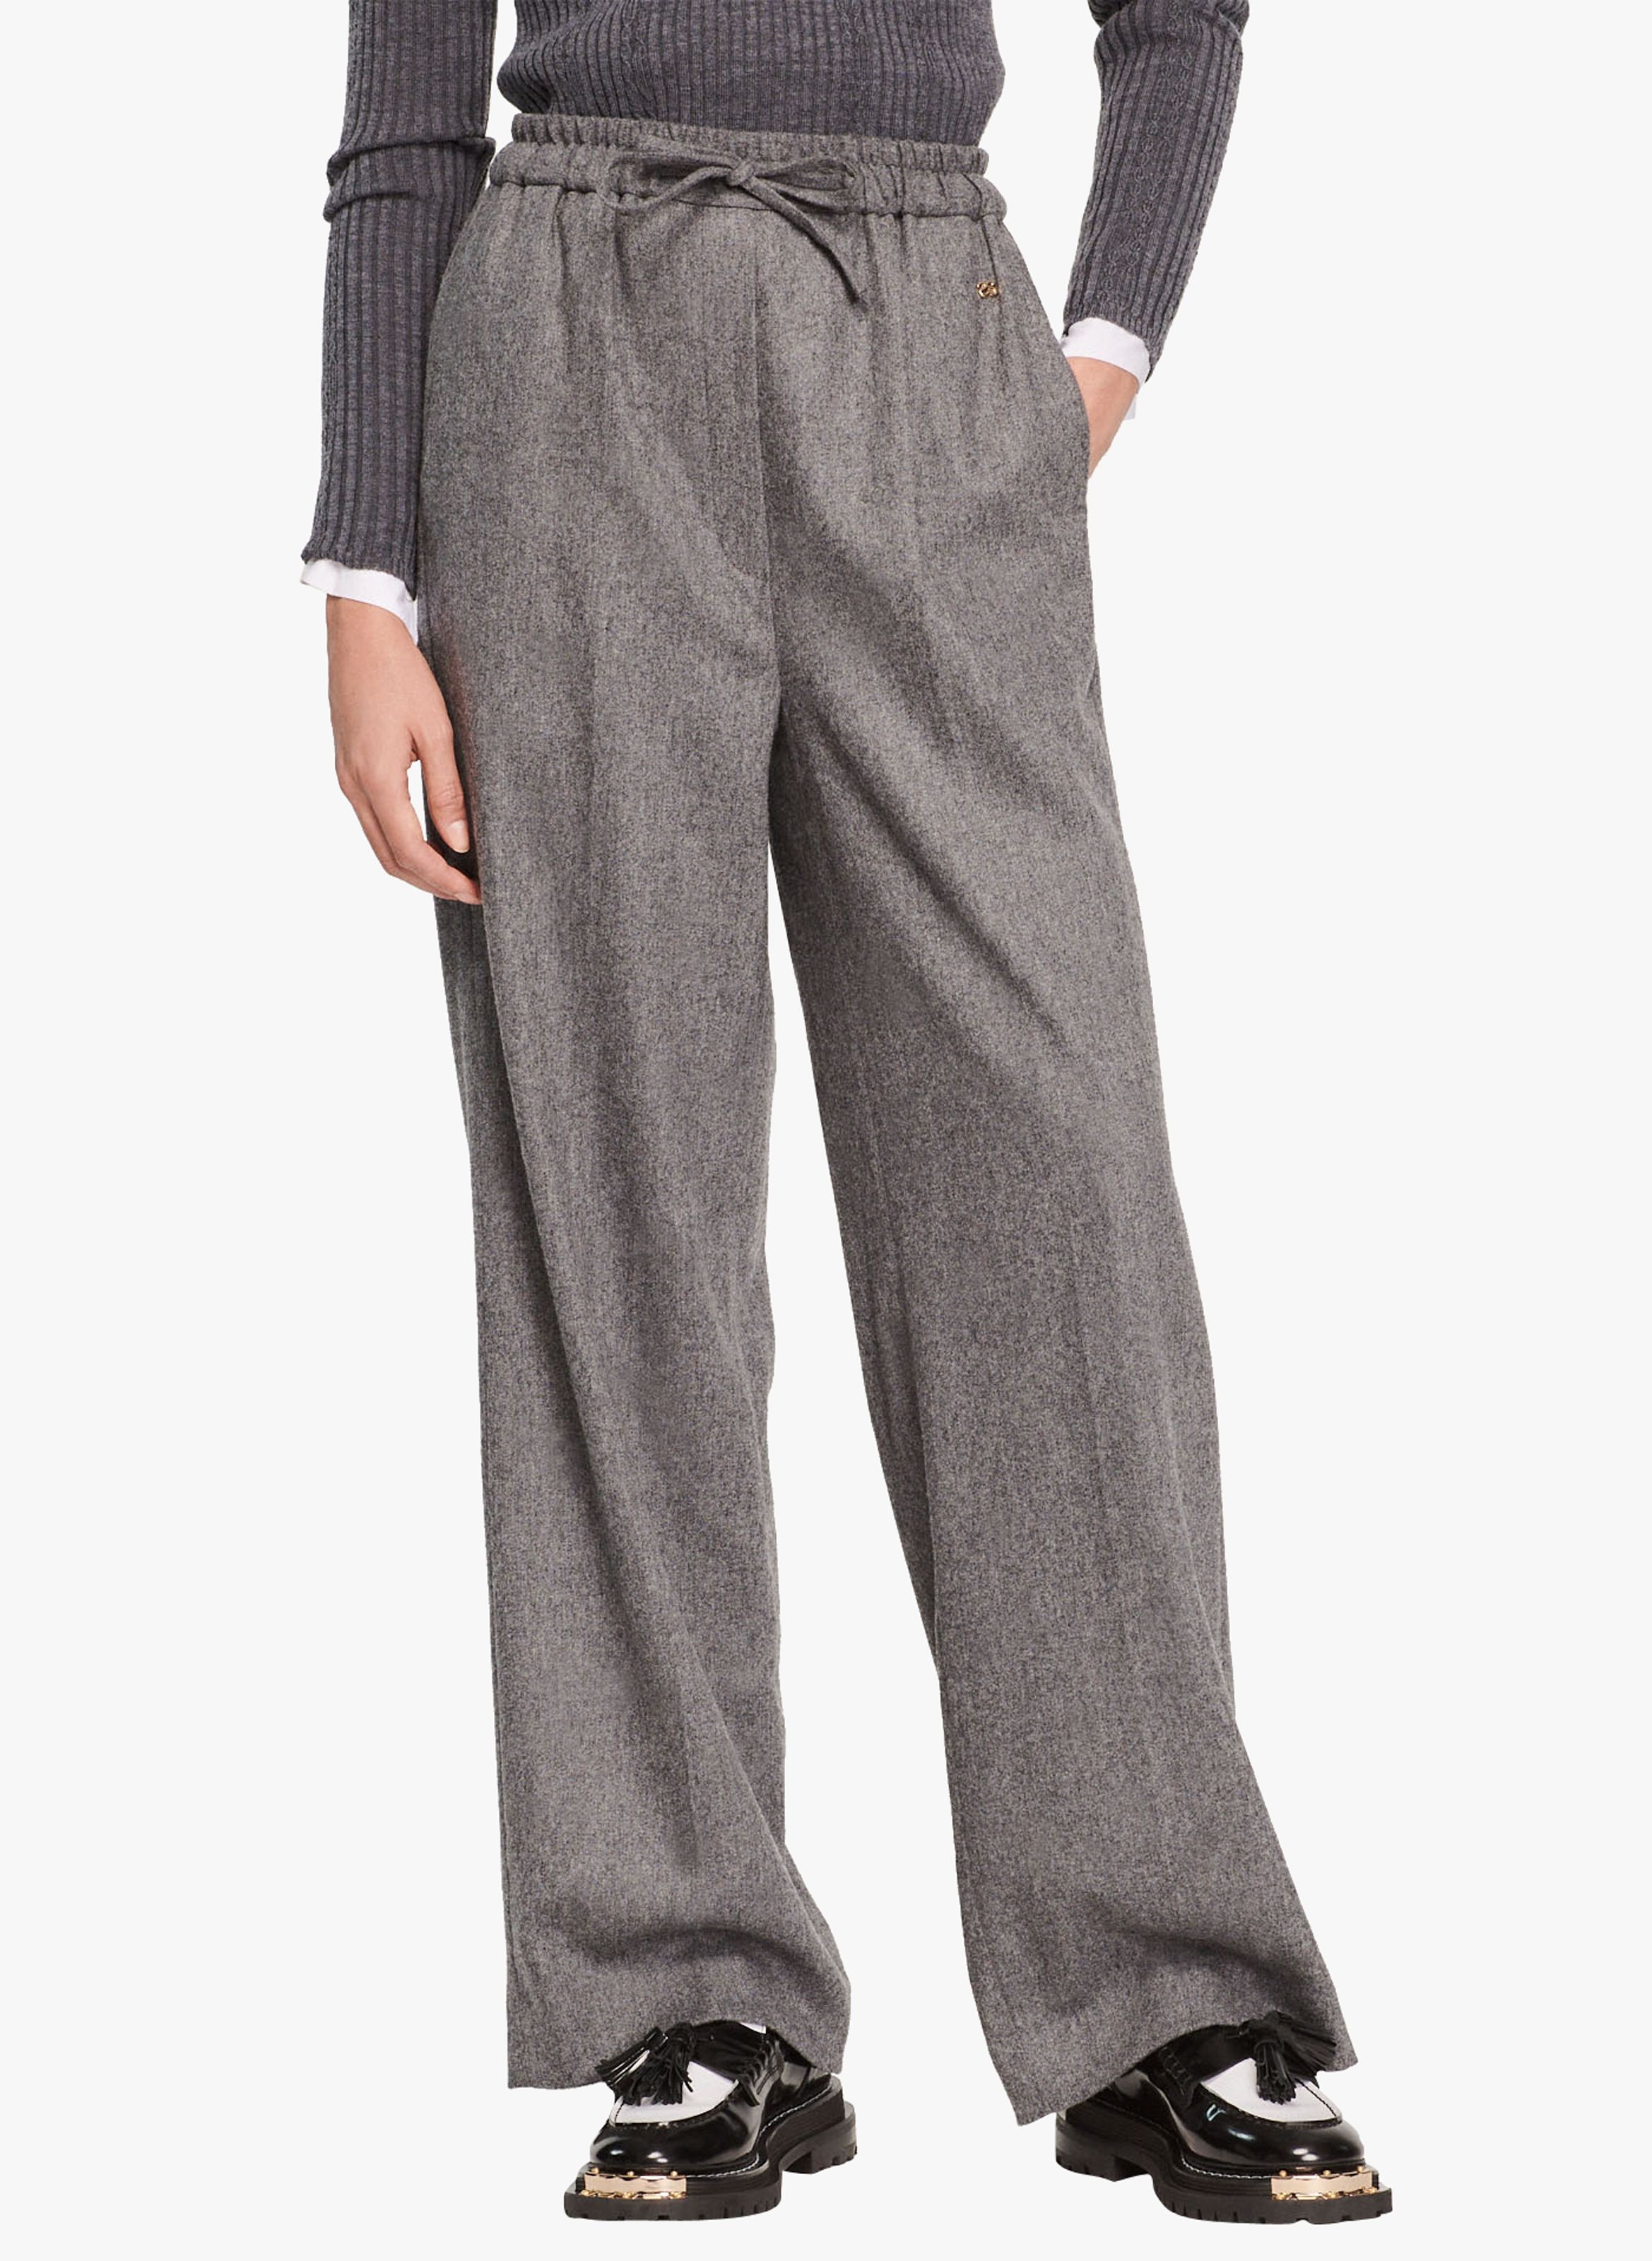 COS Pantal\u00f3n de lana gris claro moteado estilo \u00abbusiness\u00bb Moda Pantalones Pantalones de lana 